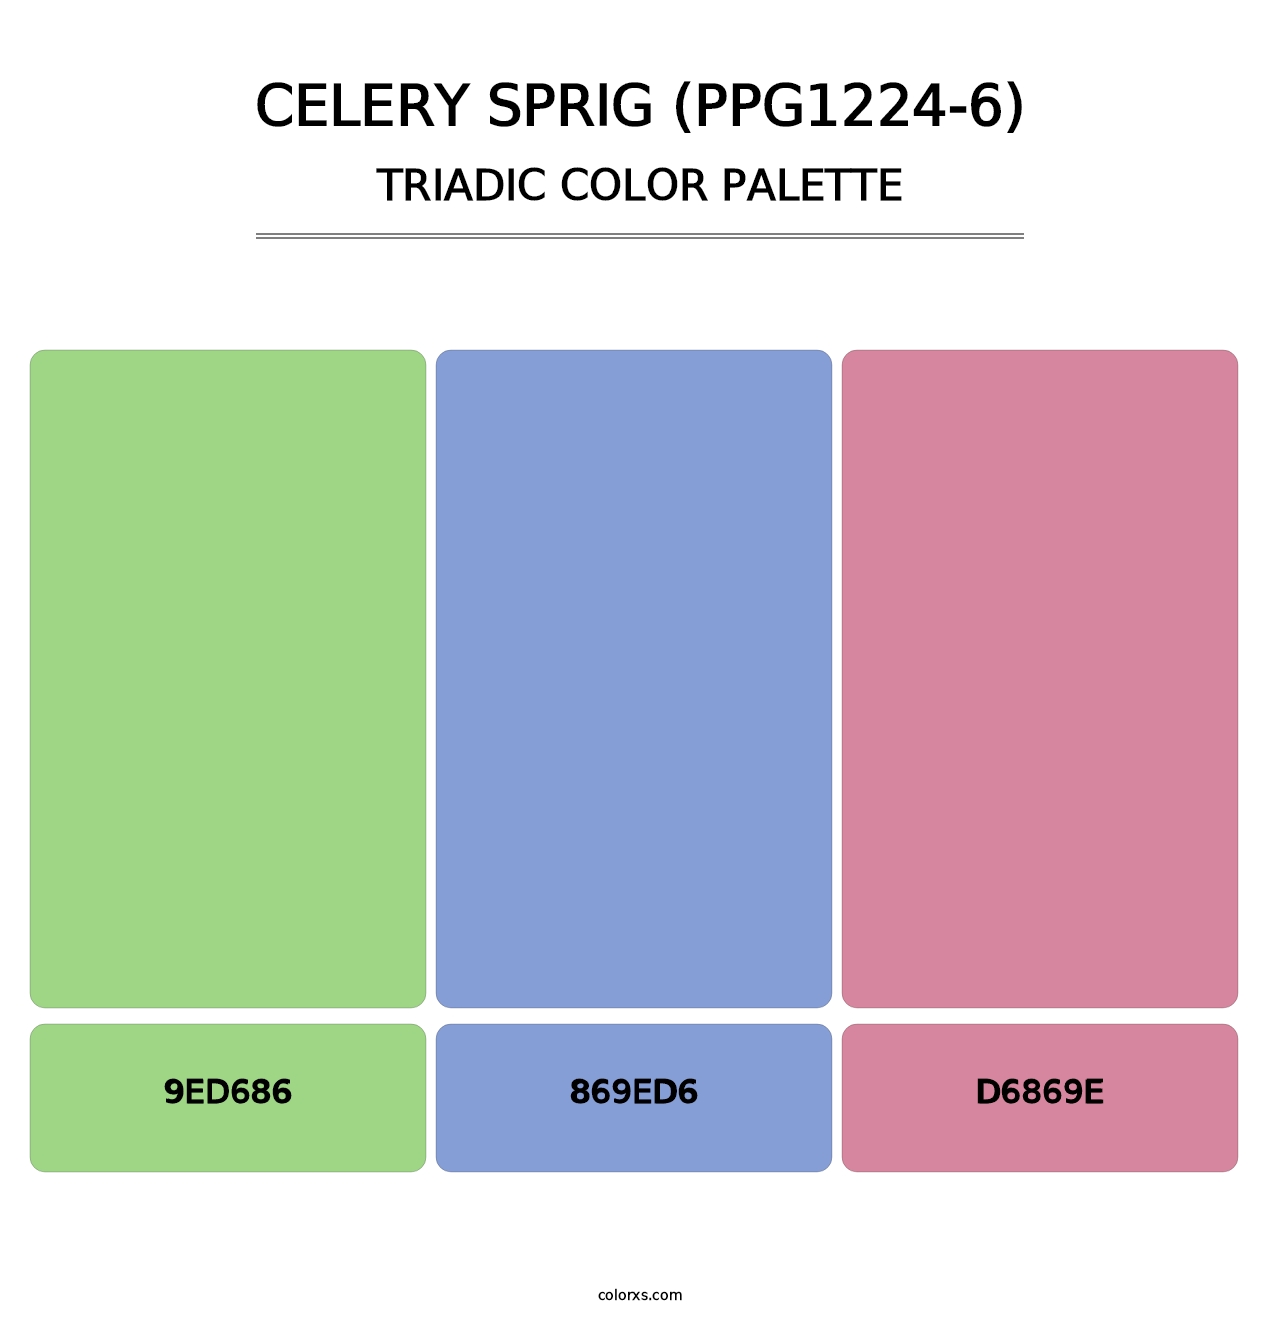 Celery Sprig (PPG1224-6) - Triadic Color Palette